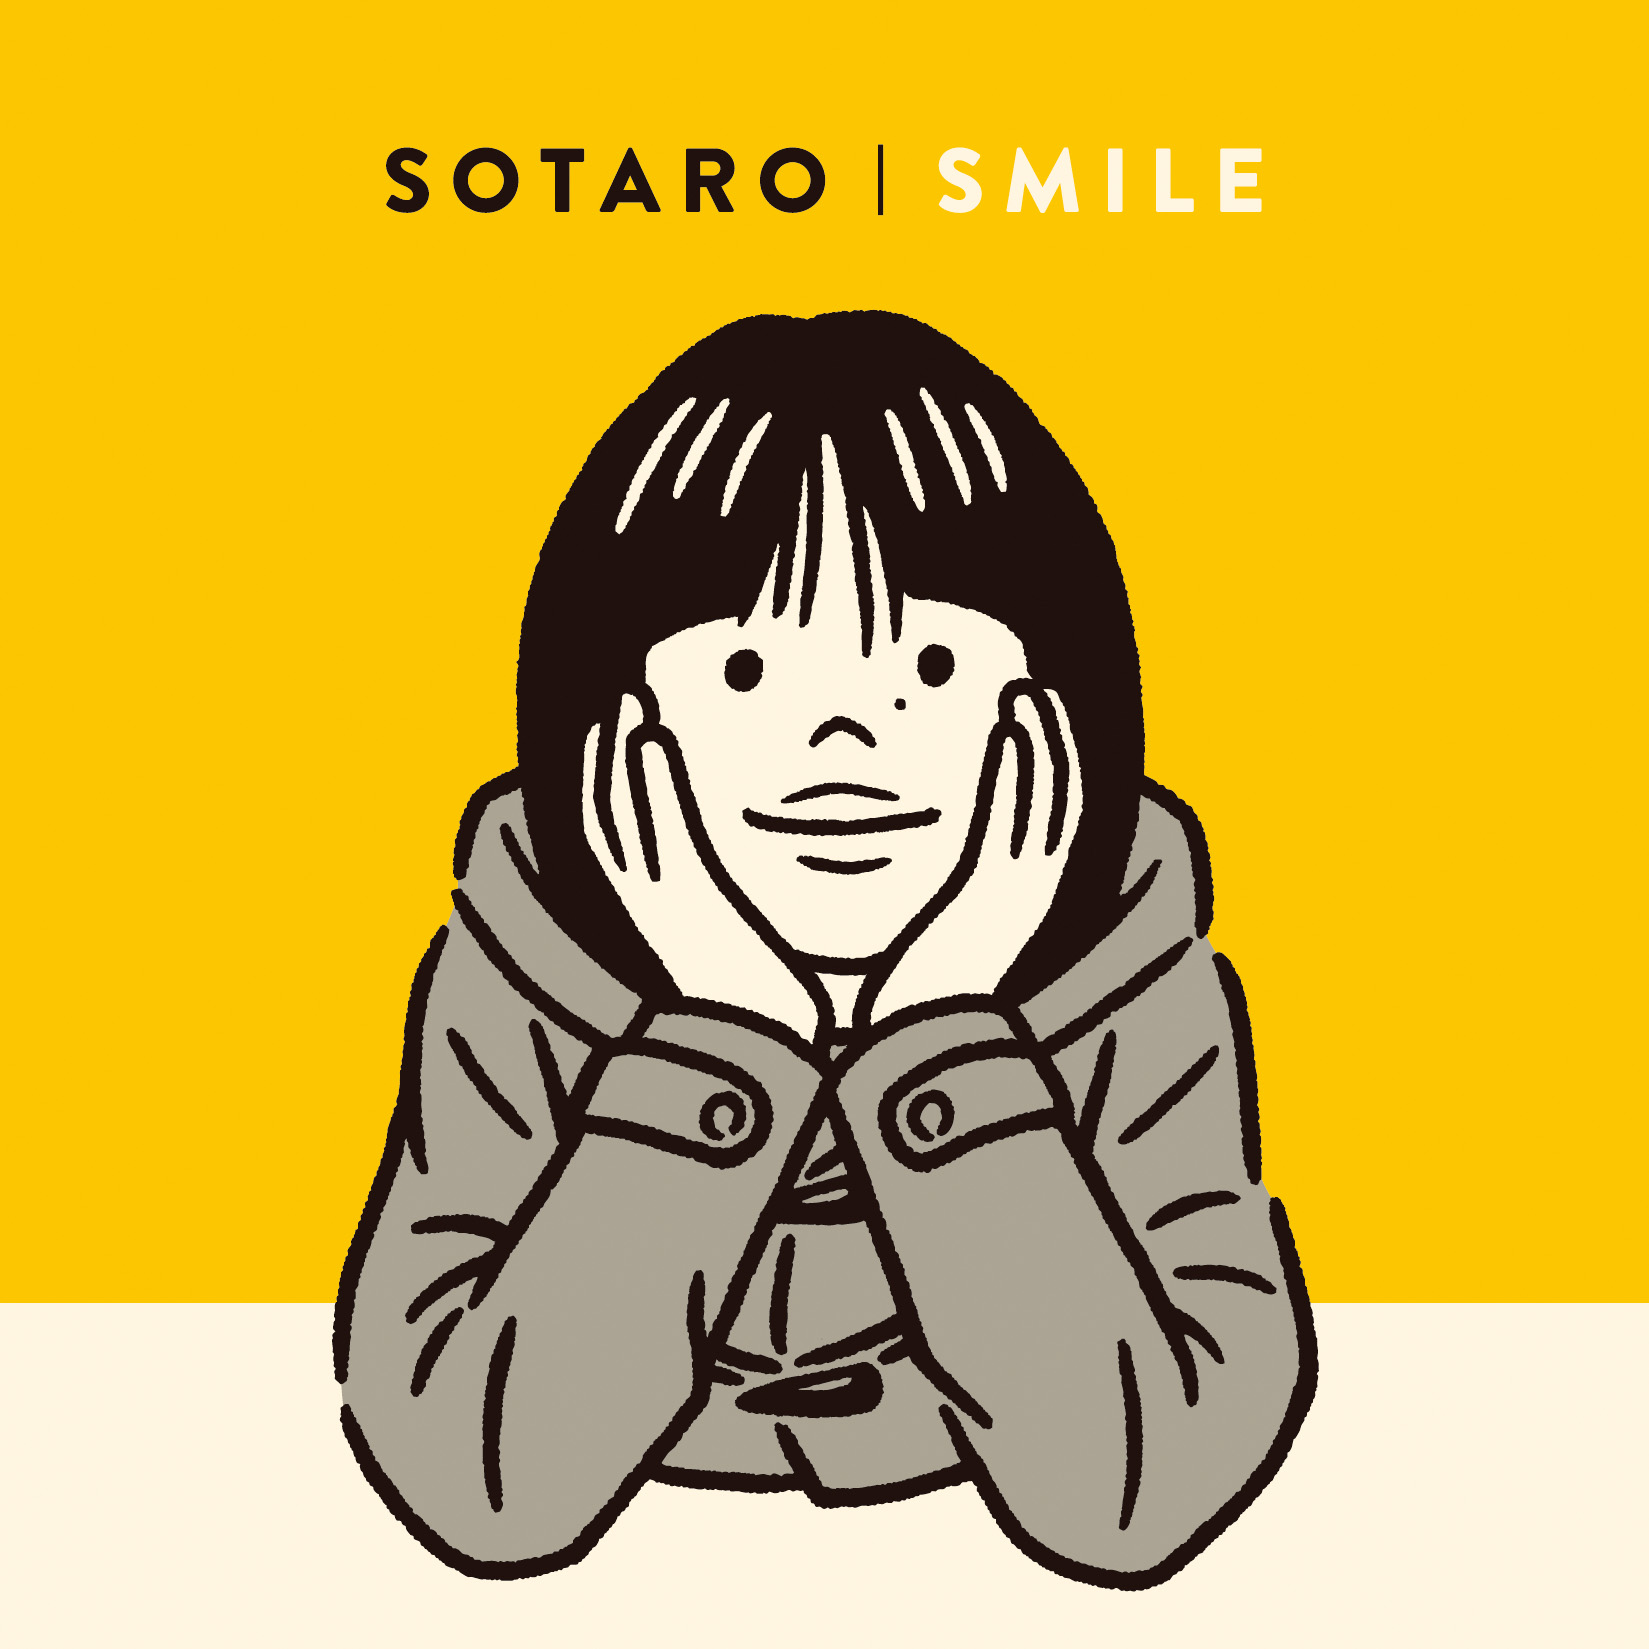 SOTARO - SMILE